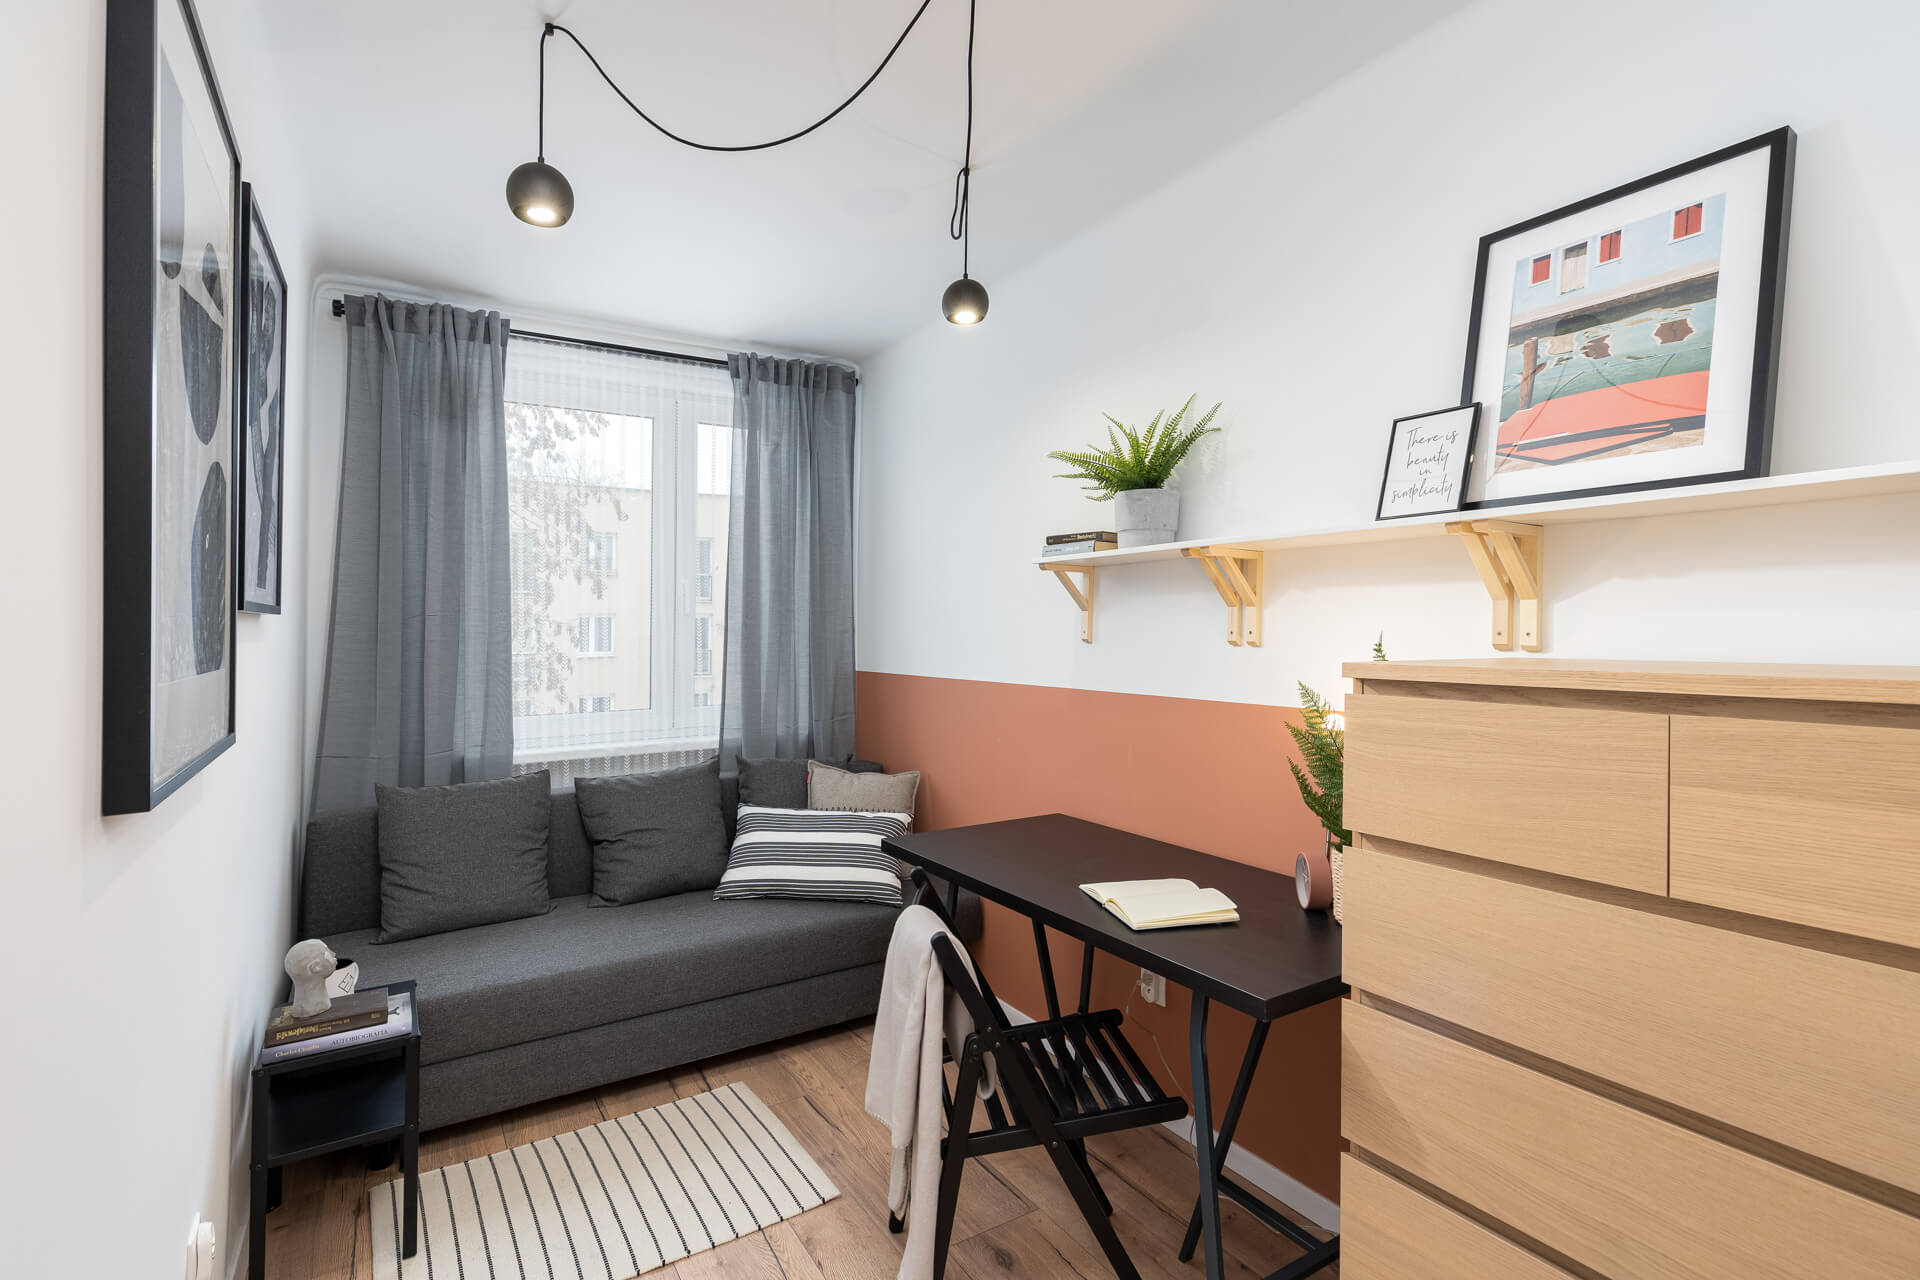 Mieszkanie inwestycyjne przygotowane na wynajem w krakowskiej dzielnicy Krowodrza